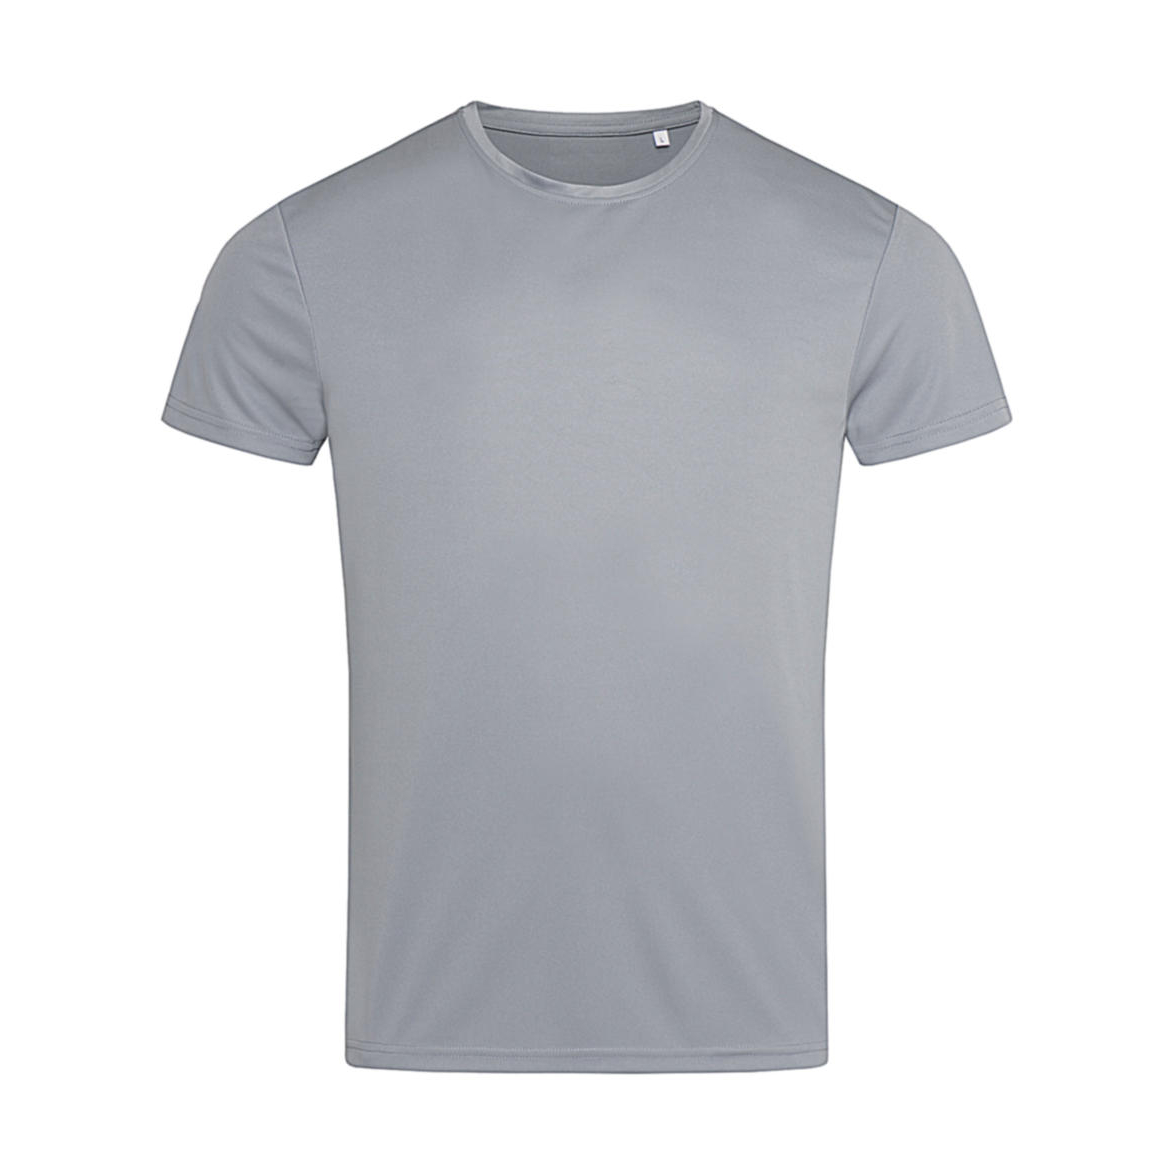 Triko pánské Stedman sportovní tričko - šedé, XL